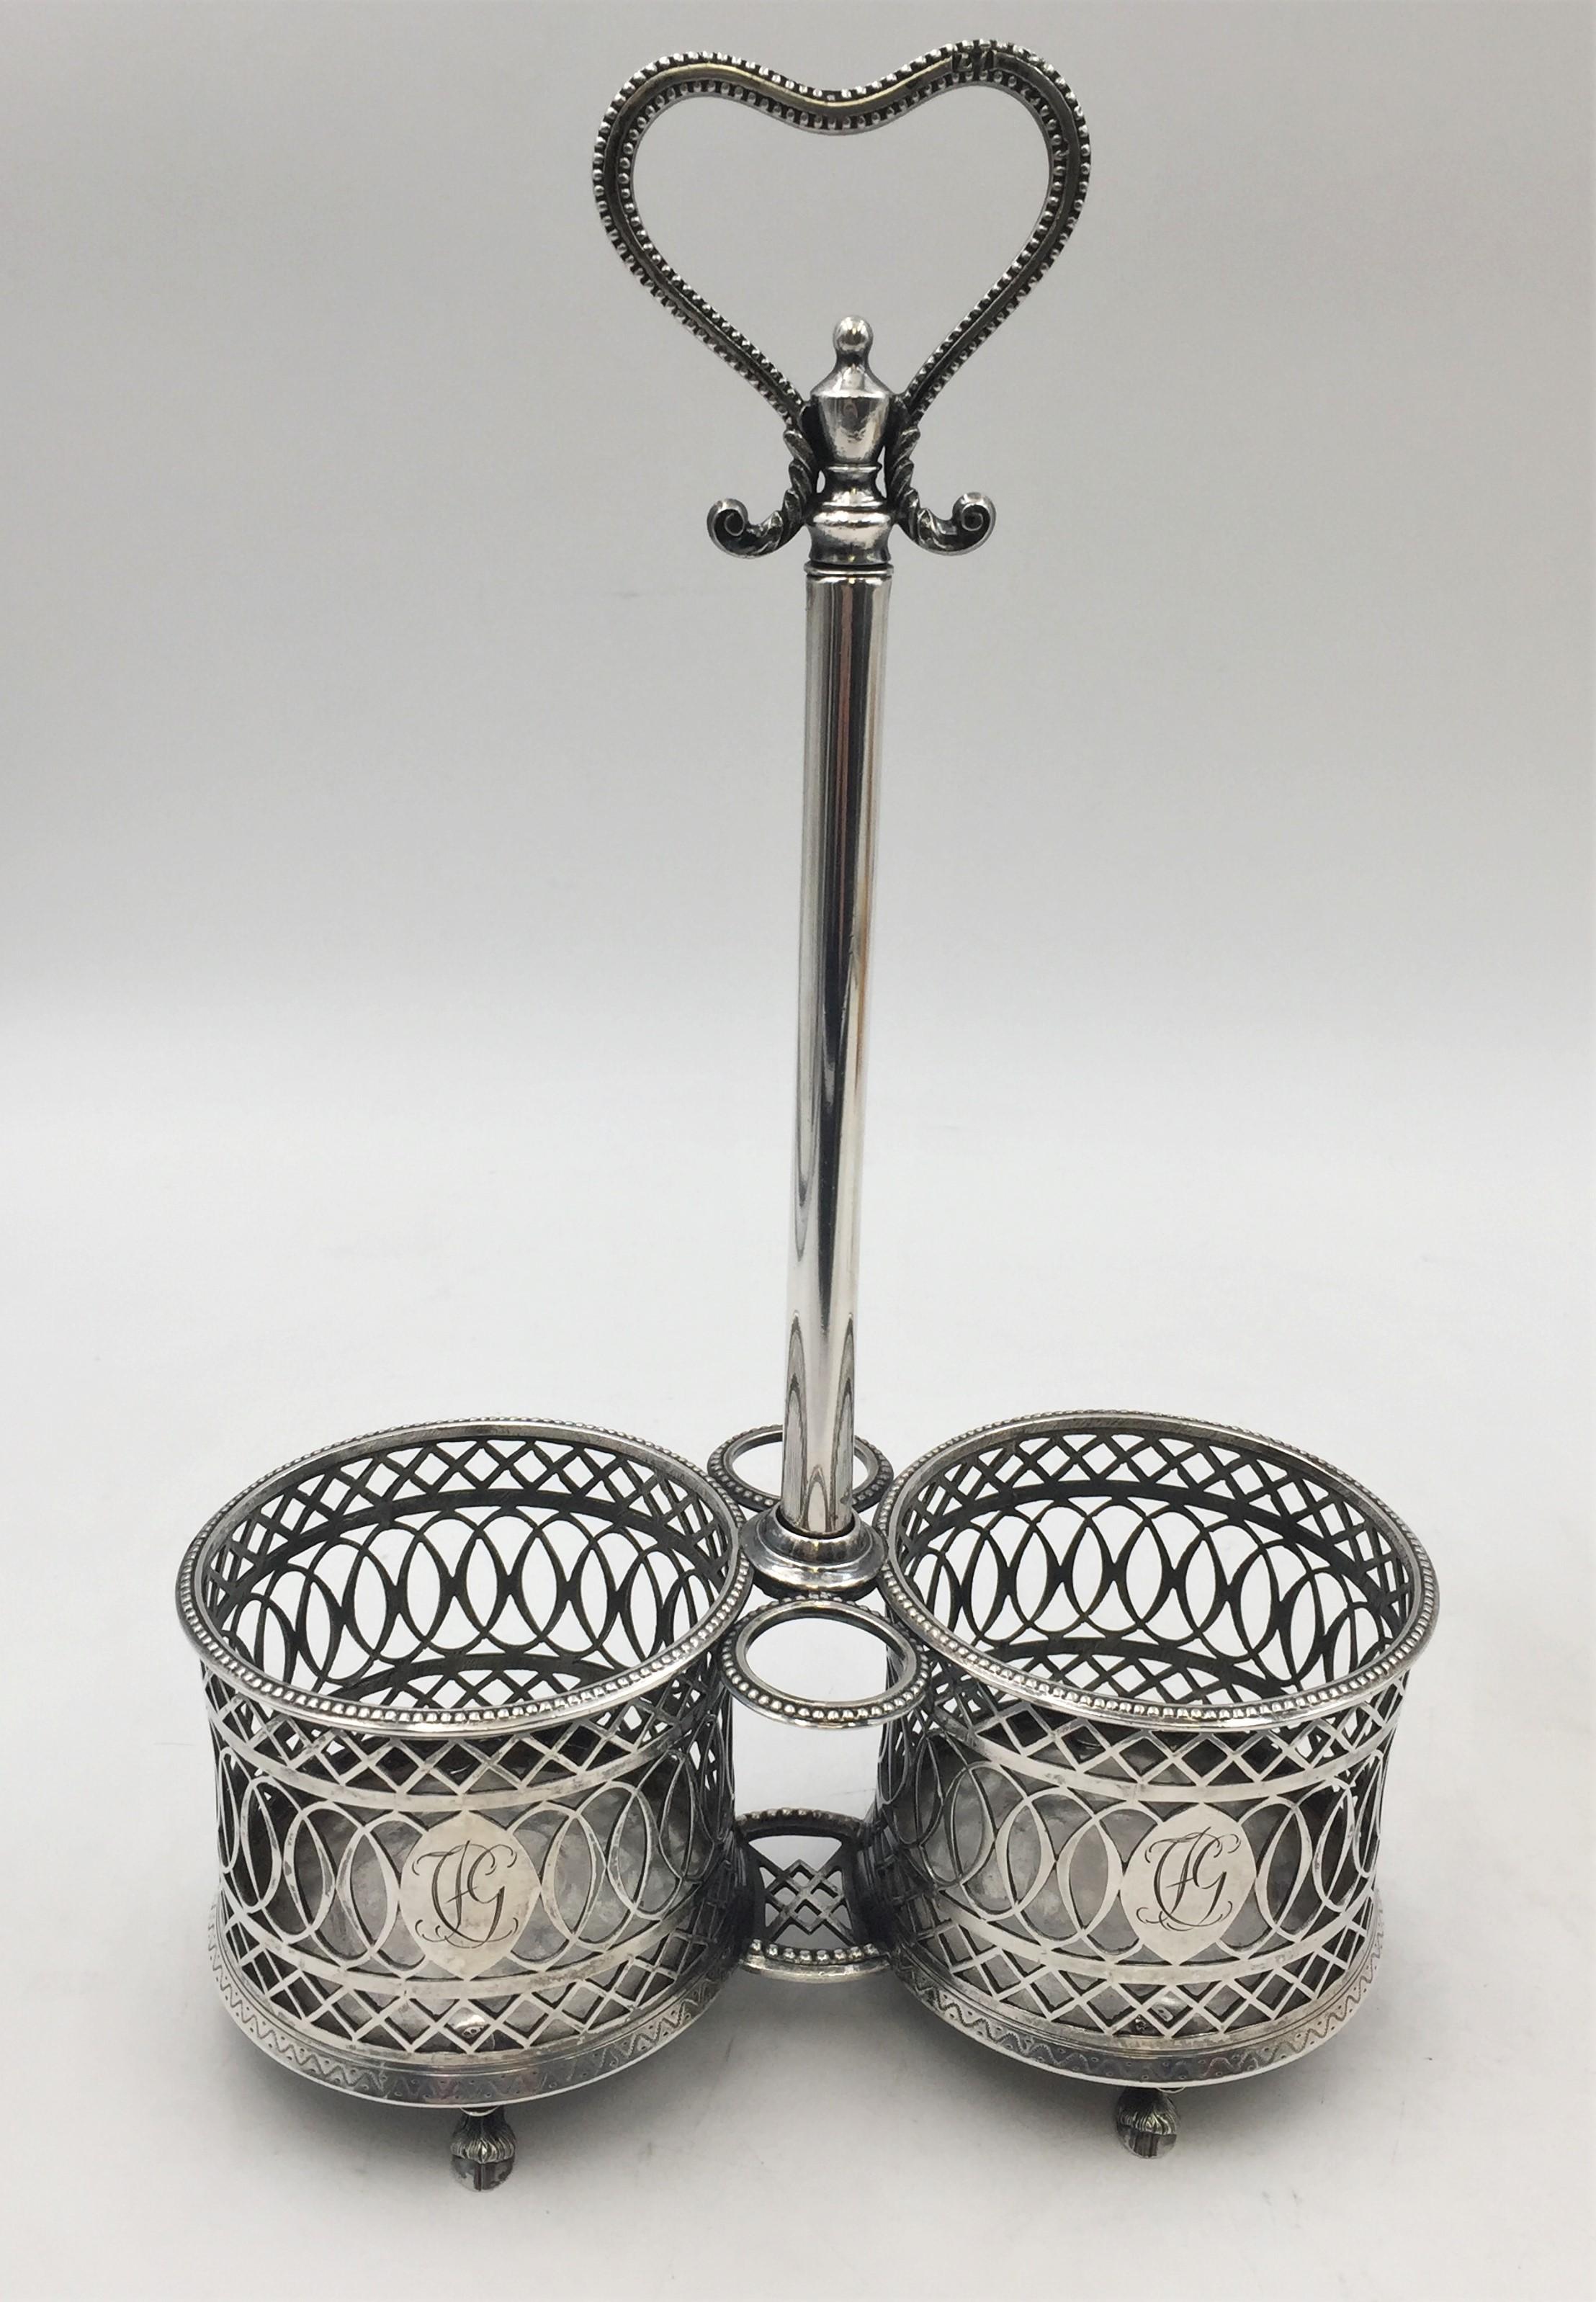 Kontinentaler Silberkrug, wahrscheinlich deutsch und aus dem 18. Jahrhundert, mit exquisiter Durchlochung und Kartuschen mit eingravierten Monogrammen, auf 4 tierförmigen Füßen stehend, mit 2 Glasflaschen mit Stopfen. Der Halter misst 11 1/2'' in